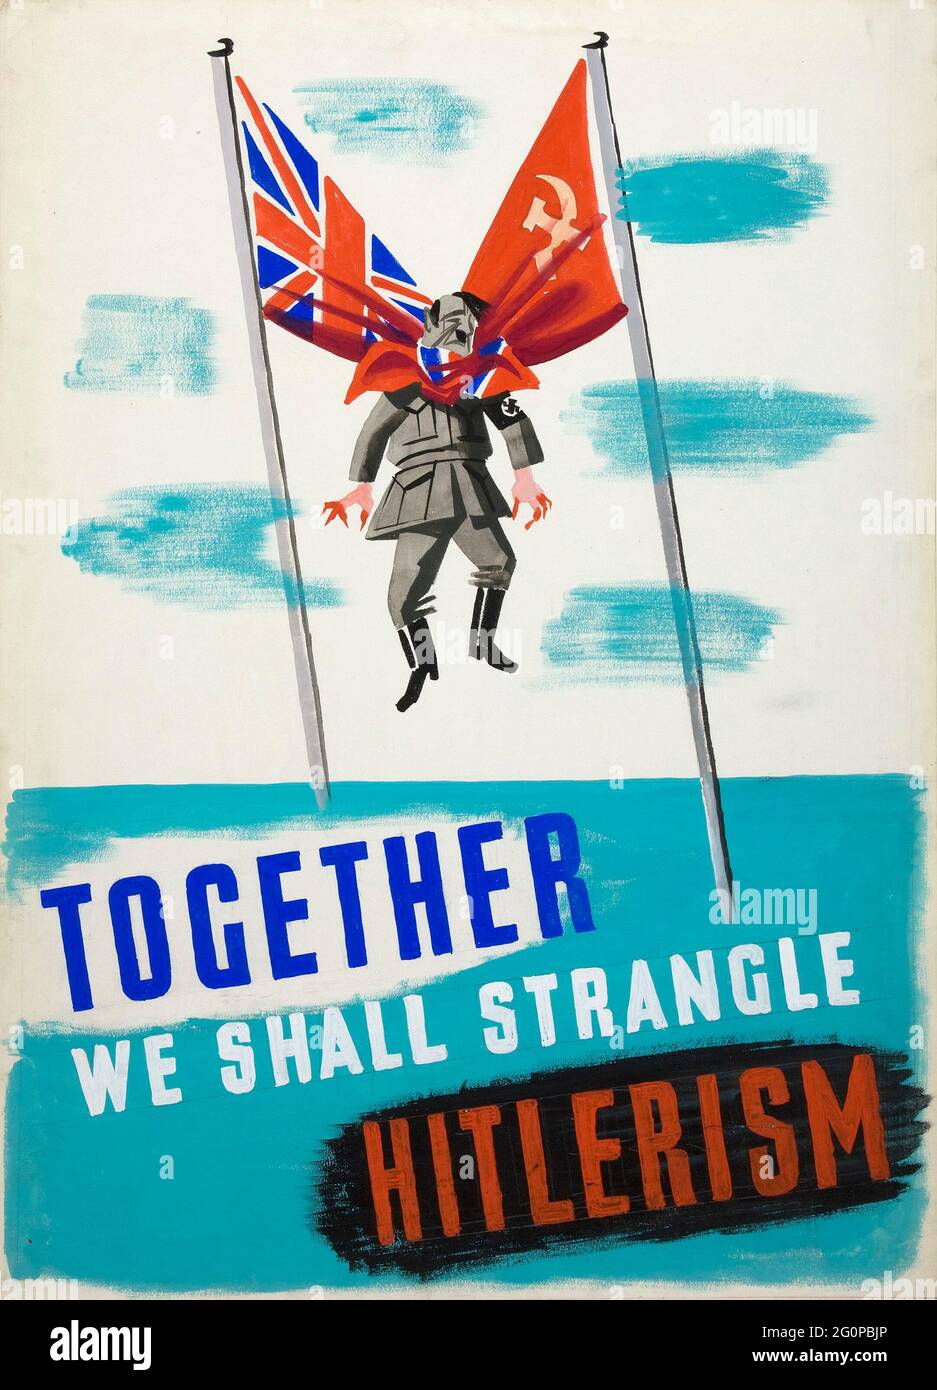 Un poster di propaganda alleata d'epoca che mostra Hitler strangolato dalle bandiere dell'URSS e del Regno Unito con lo slogan "Together We Chall strangle Hitlerism" Foto Stock